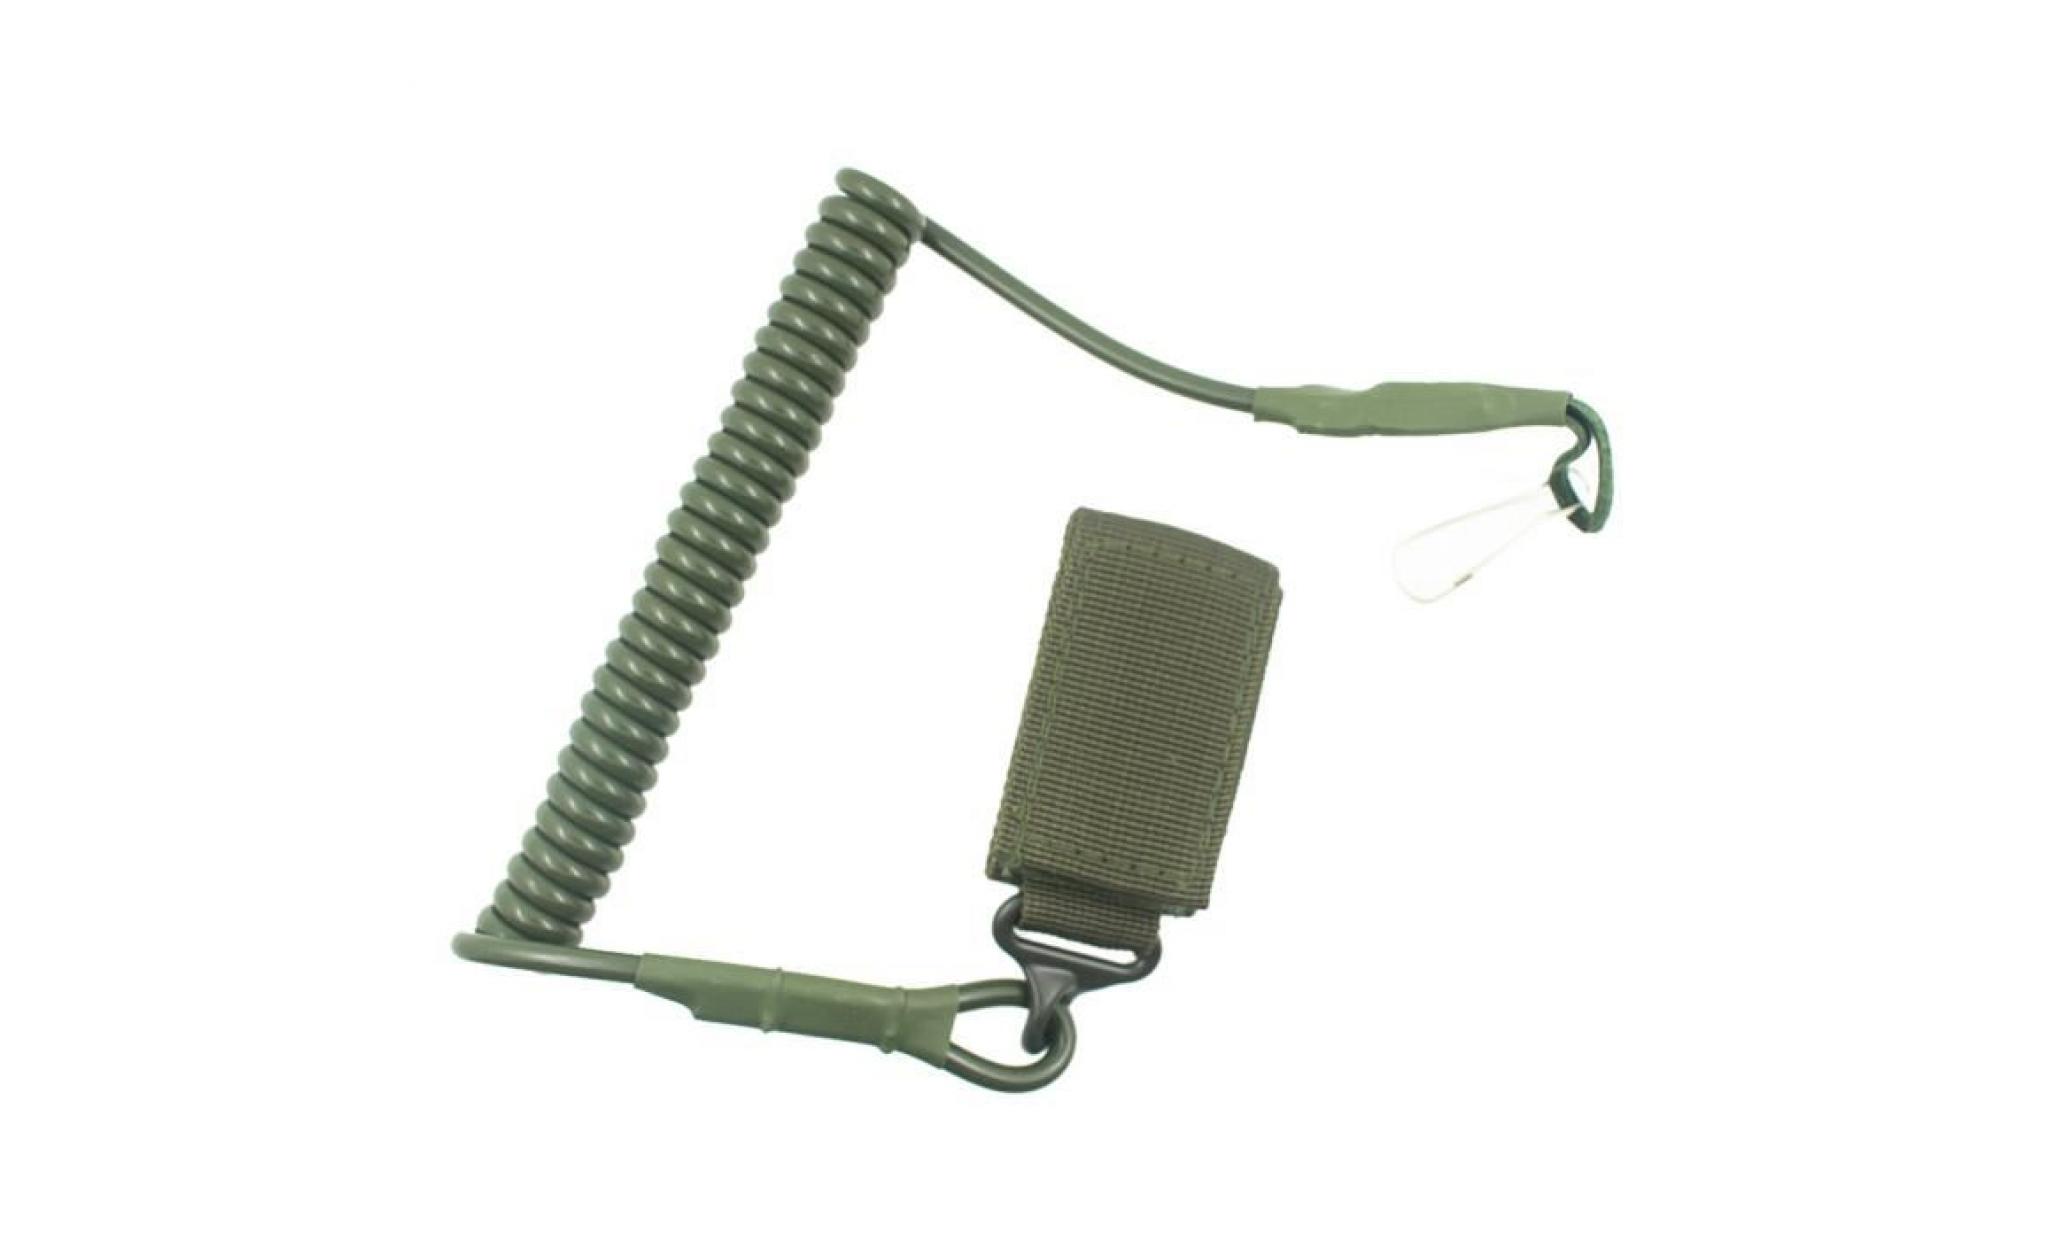 boucle accrochante de boucle escamotable de corde d'anti effraction d'équipement extérieur key ag@fse754  vert armée